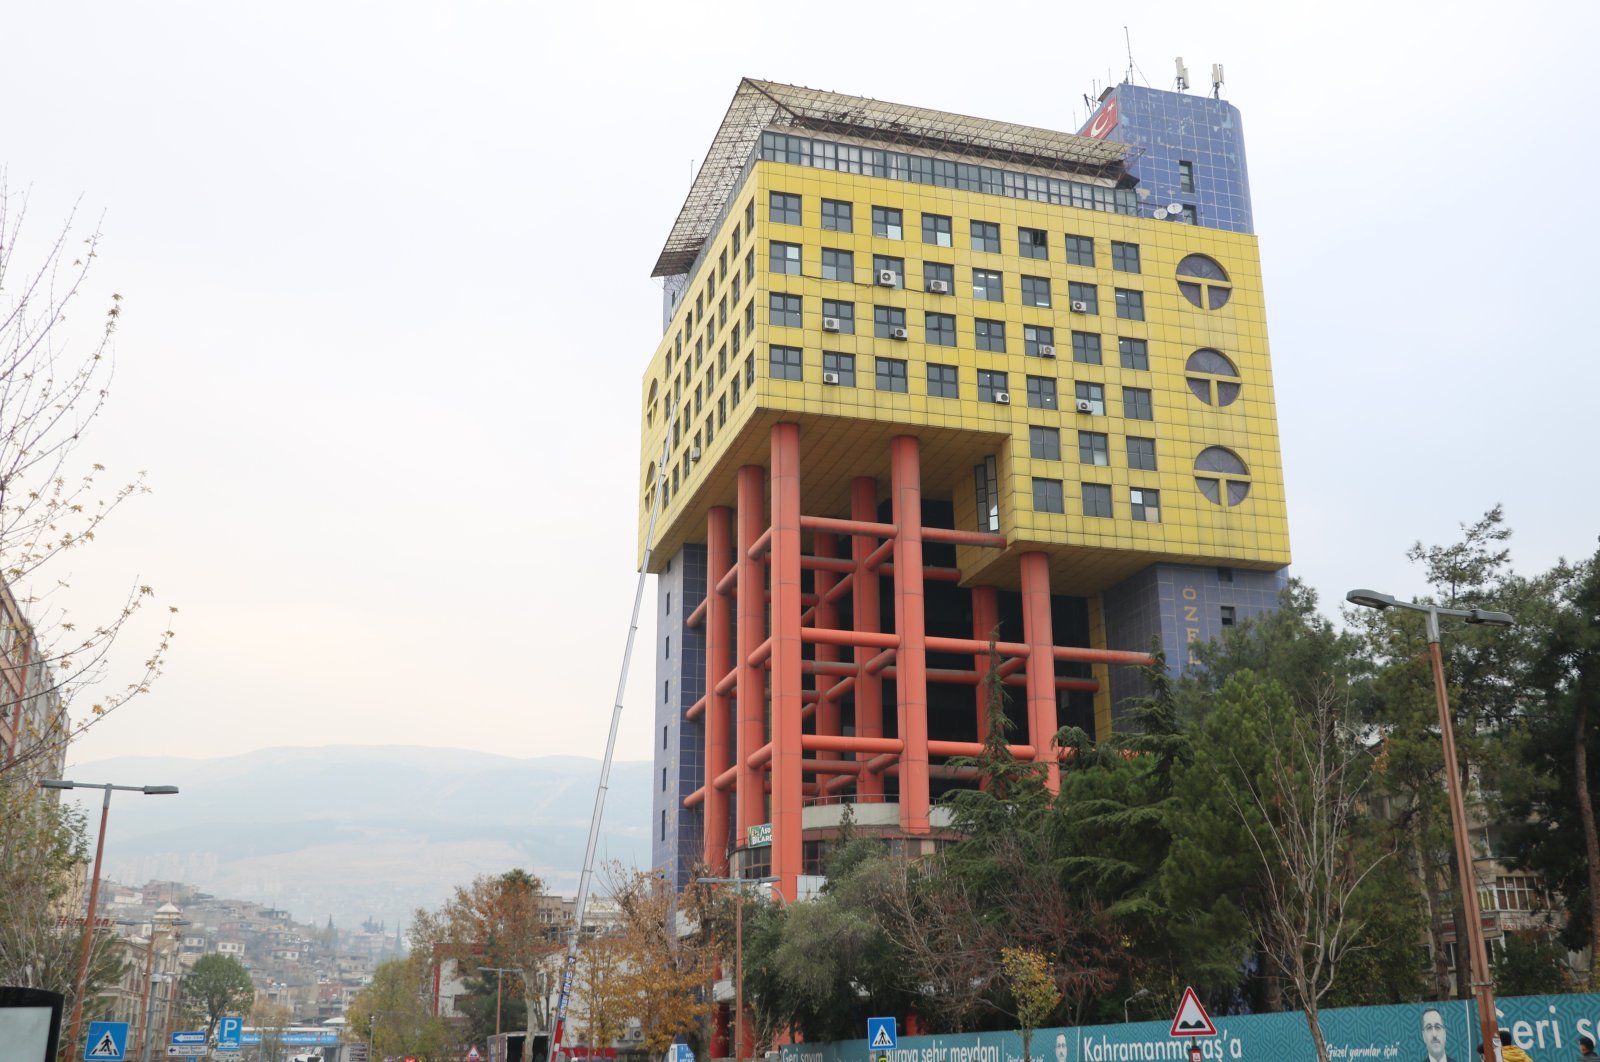 Pembongkaran dimulai di gedung paling konyol di dunia di Kahramanmaraş